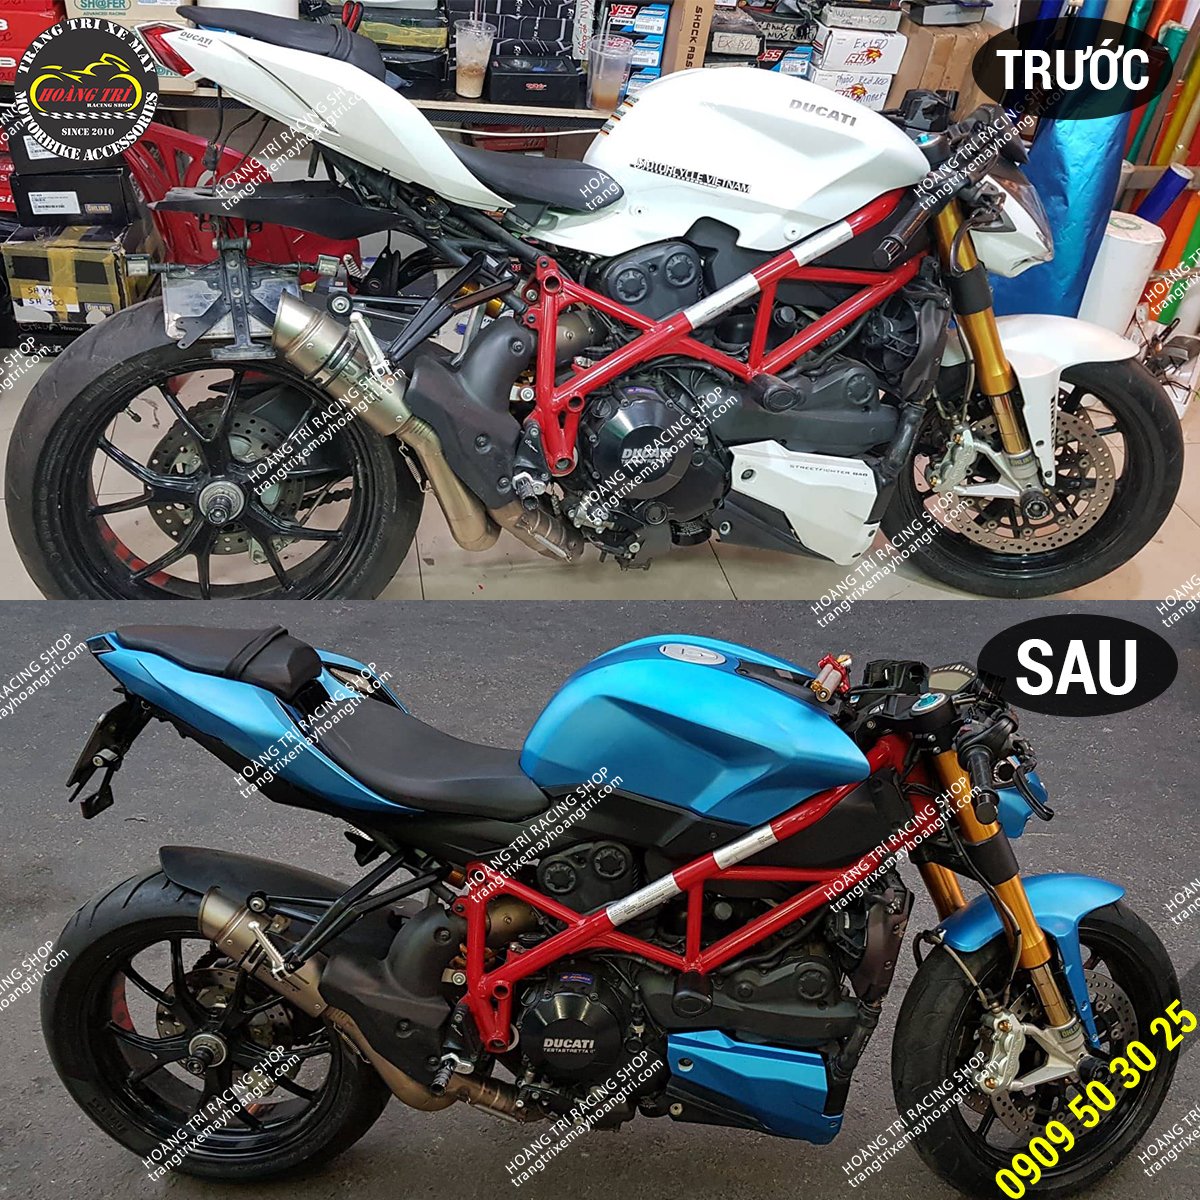 Hình ảnh trước và sau khi dán decal nhôm xước Ducati Streetfighter 848